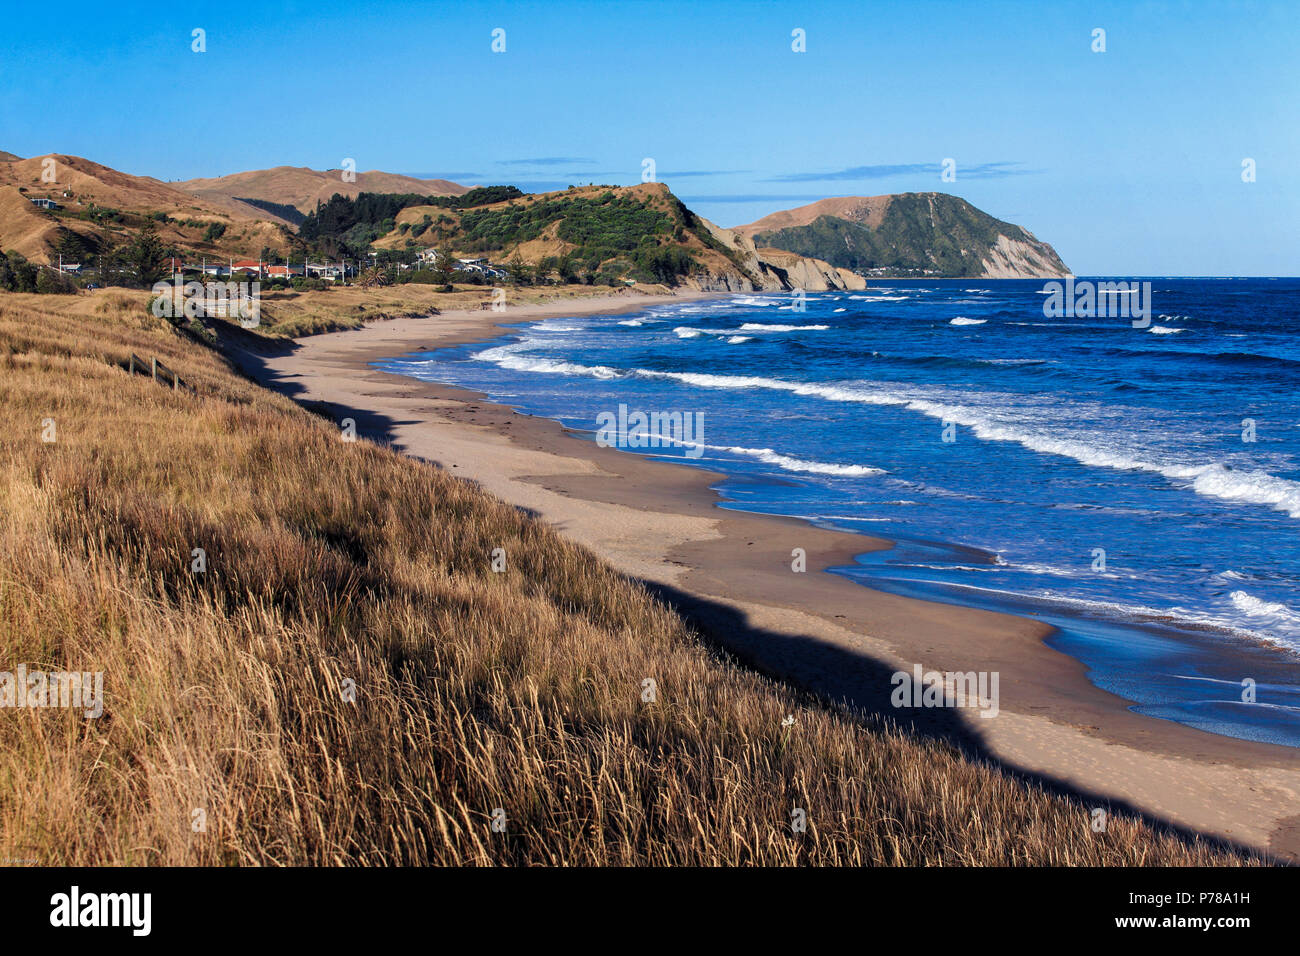 Scenic view of Wainui Beach, Gisborne, New Zealand Stock Photo